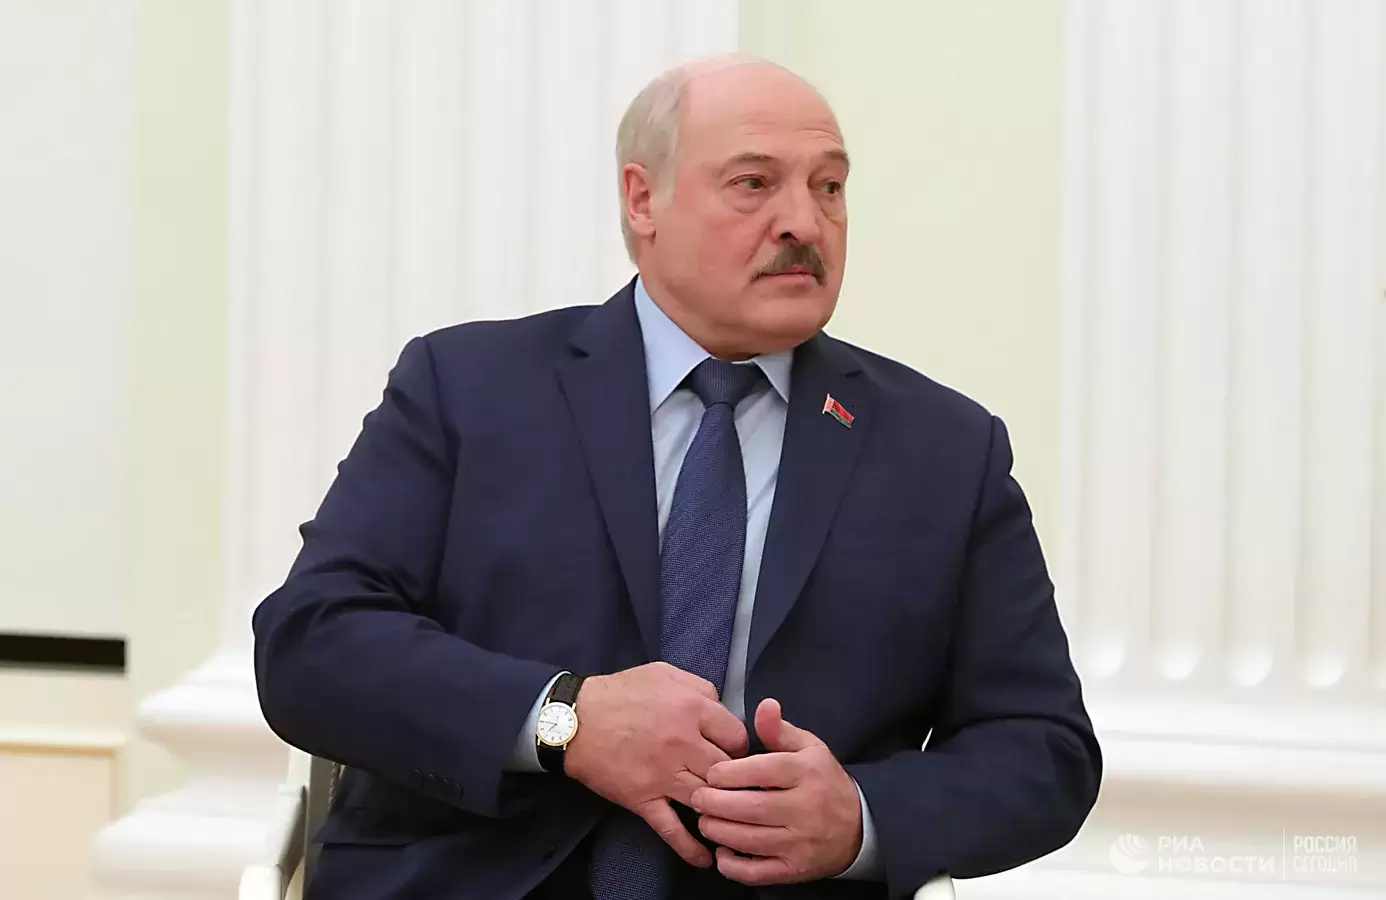 Подробнее о "Лукашенко назвал затянувшейся российскую спецоперацию на Украине"